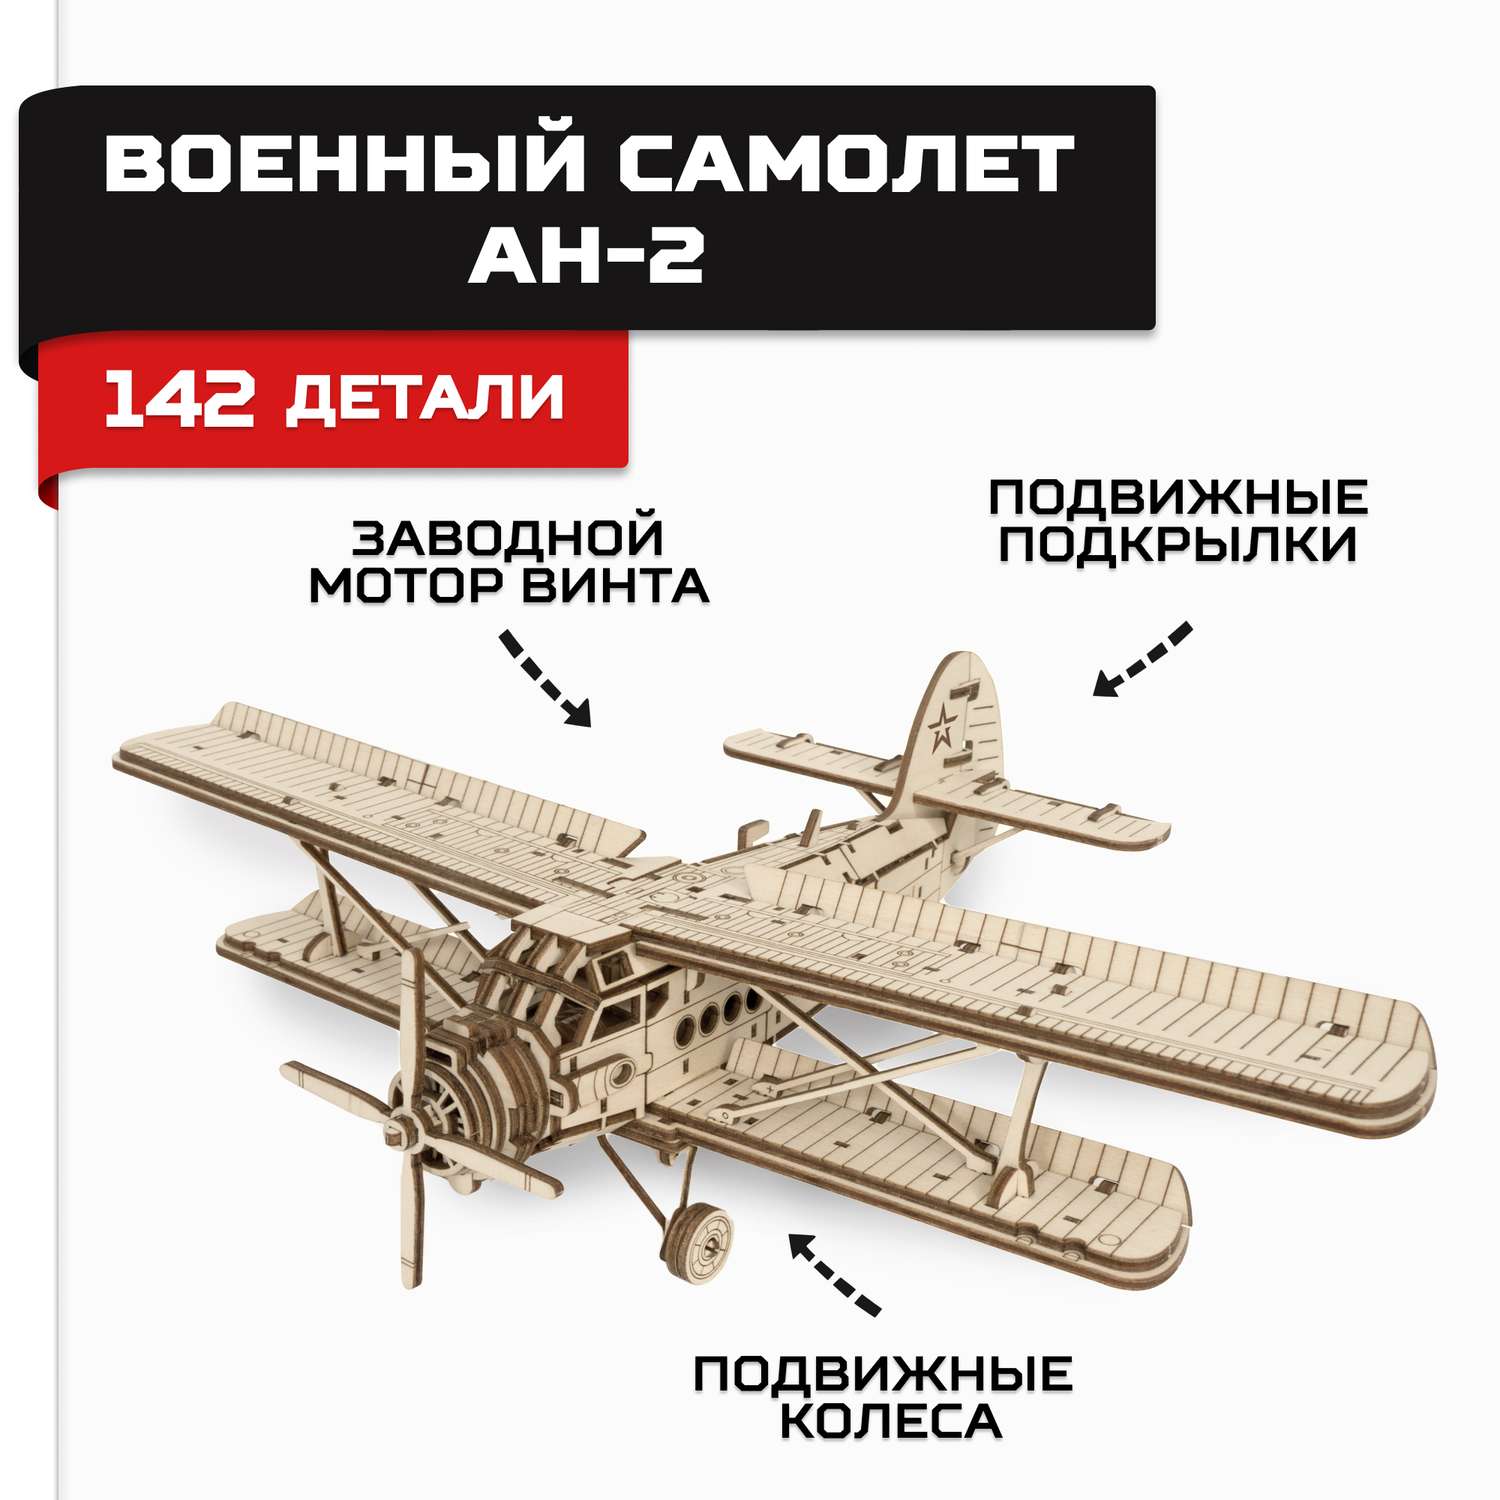 Конструктор Армия России Военный самолет АН-2 AR-K004 - фото 1